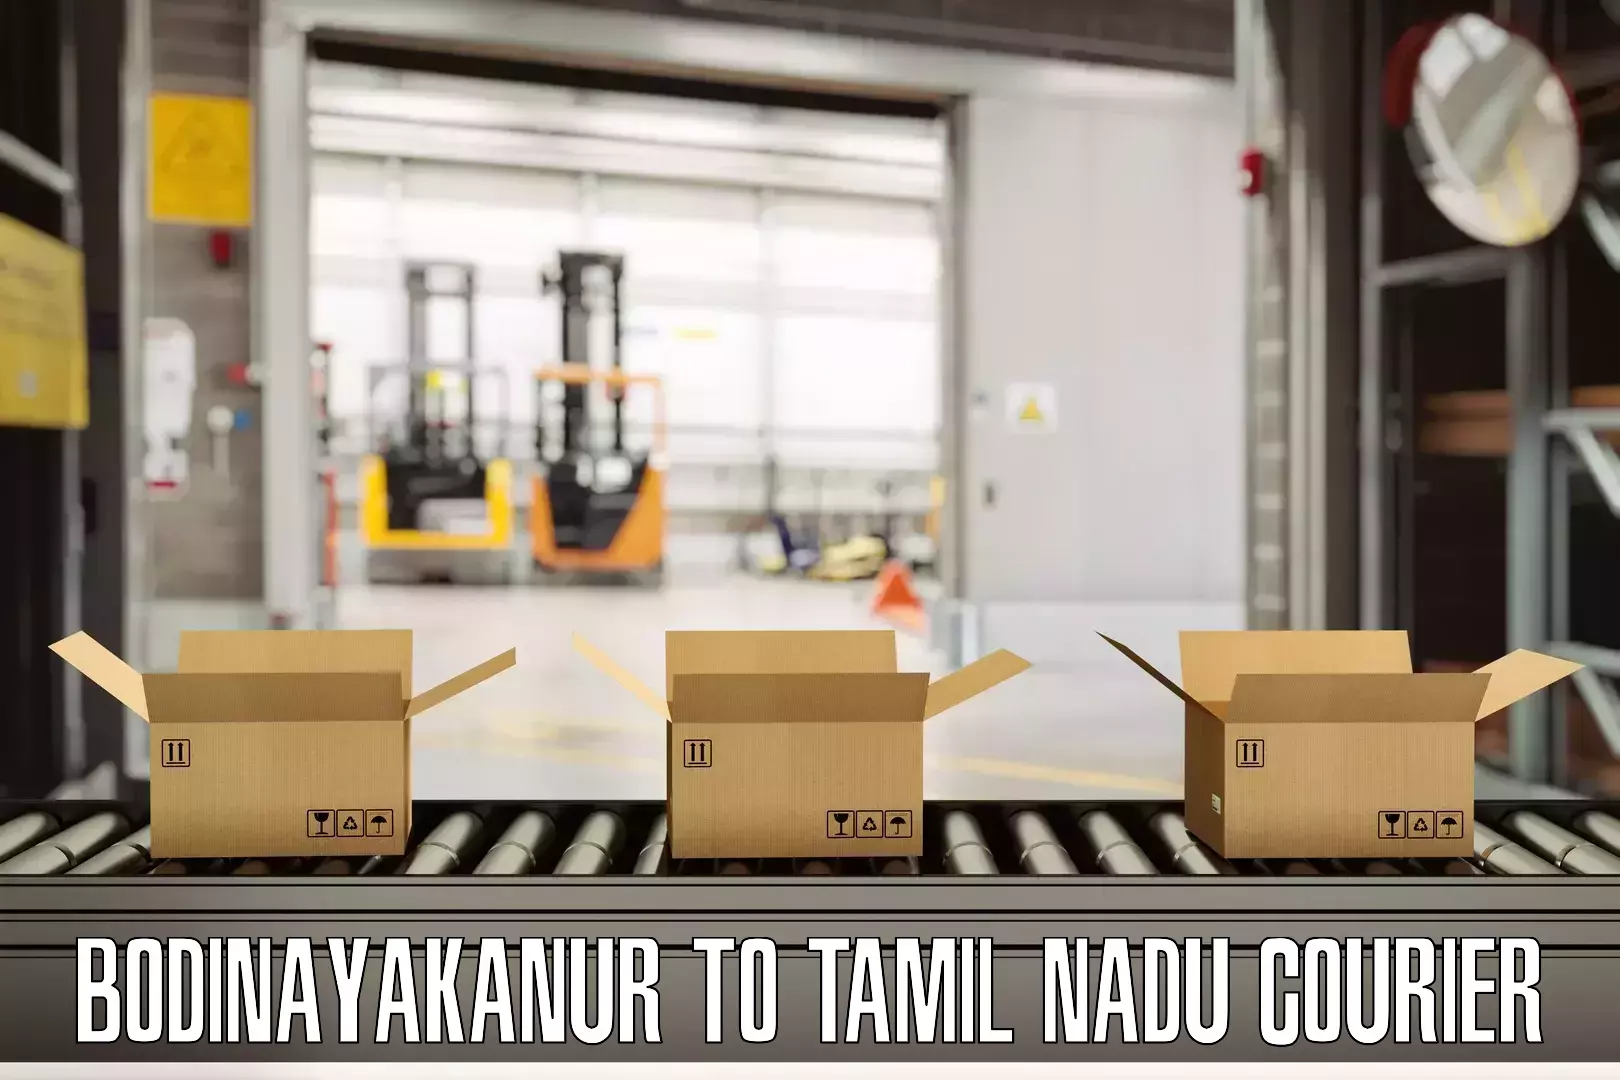 Reliable luggage courier Bodinayakanur to Tamil Nadu